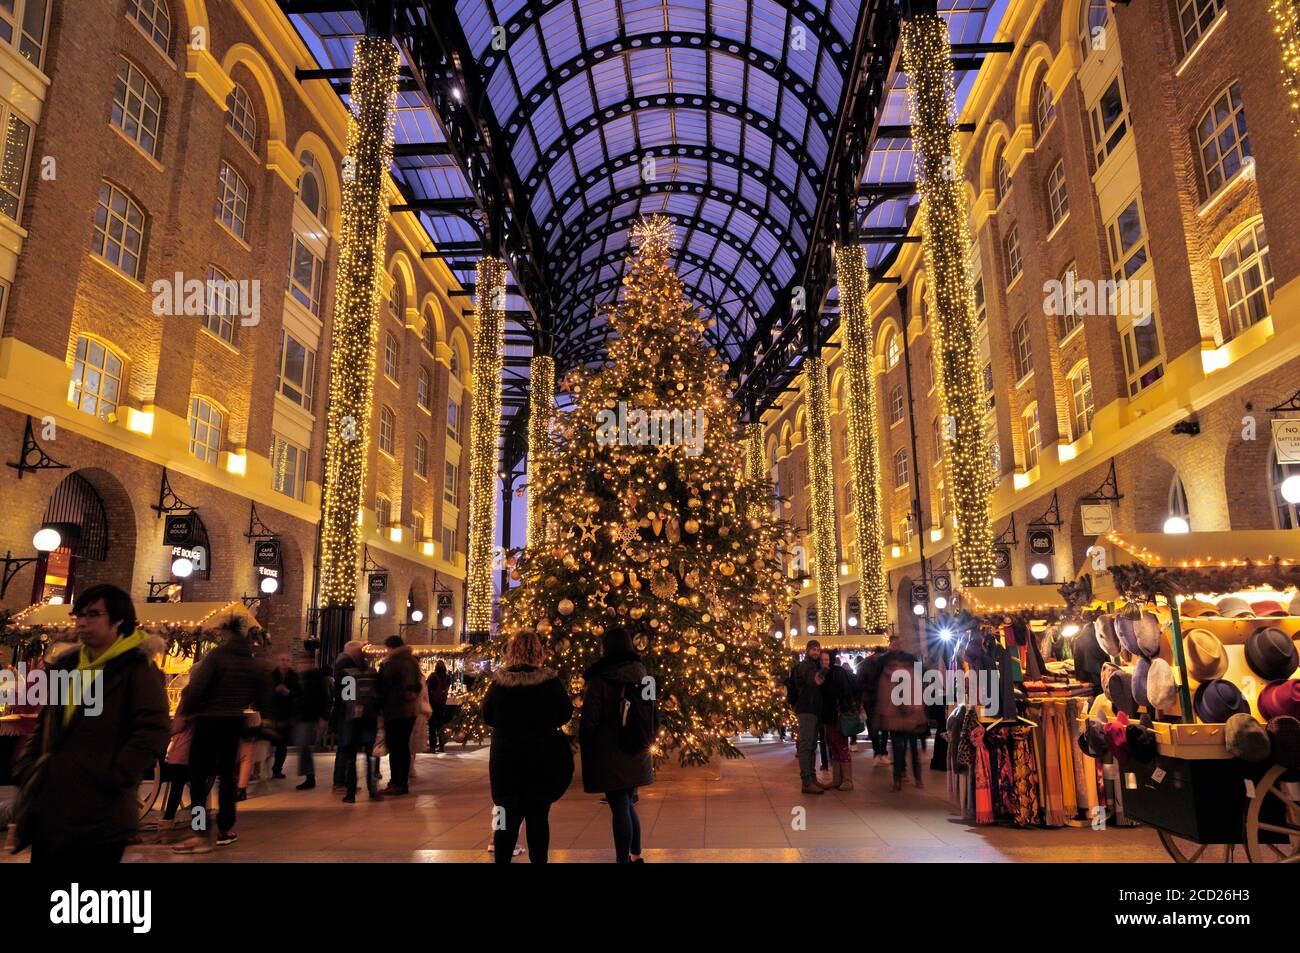 Lumières festives, étals de marché et un arbre de Noël magnifiquement décoré sous le toit voûté de Hay's Galleria, Londres, Angleterre, Royaume-Uni Banque D'Images